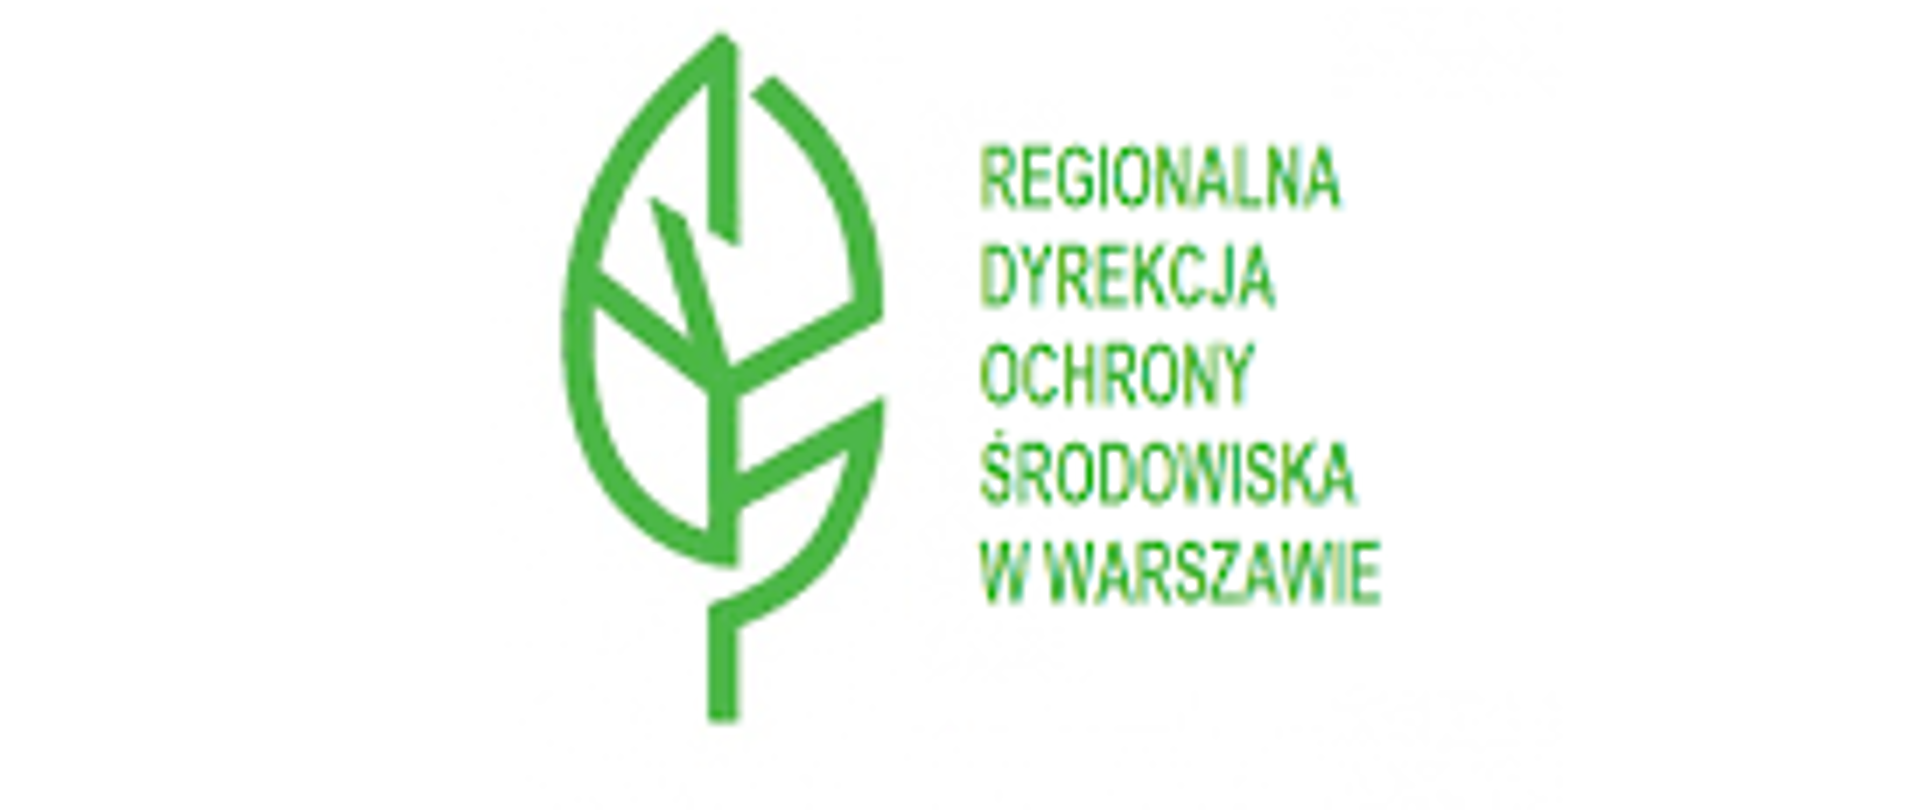 Grafika przedstawia: na białym tle po lewej stronie rysunek zielonego listka, po prawej stronie zielony napis Regionalna Dyrekcja Ochrony Środowiska w Warszawie